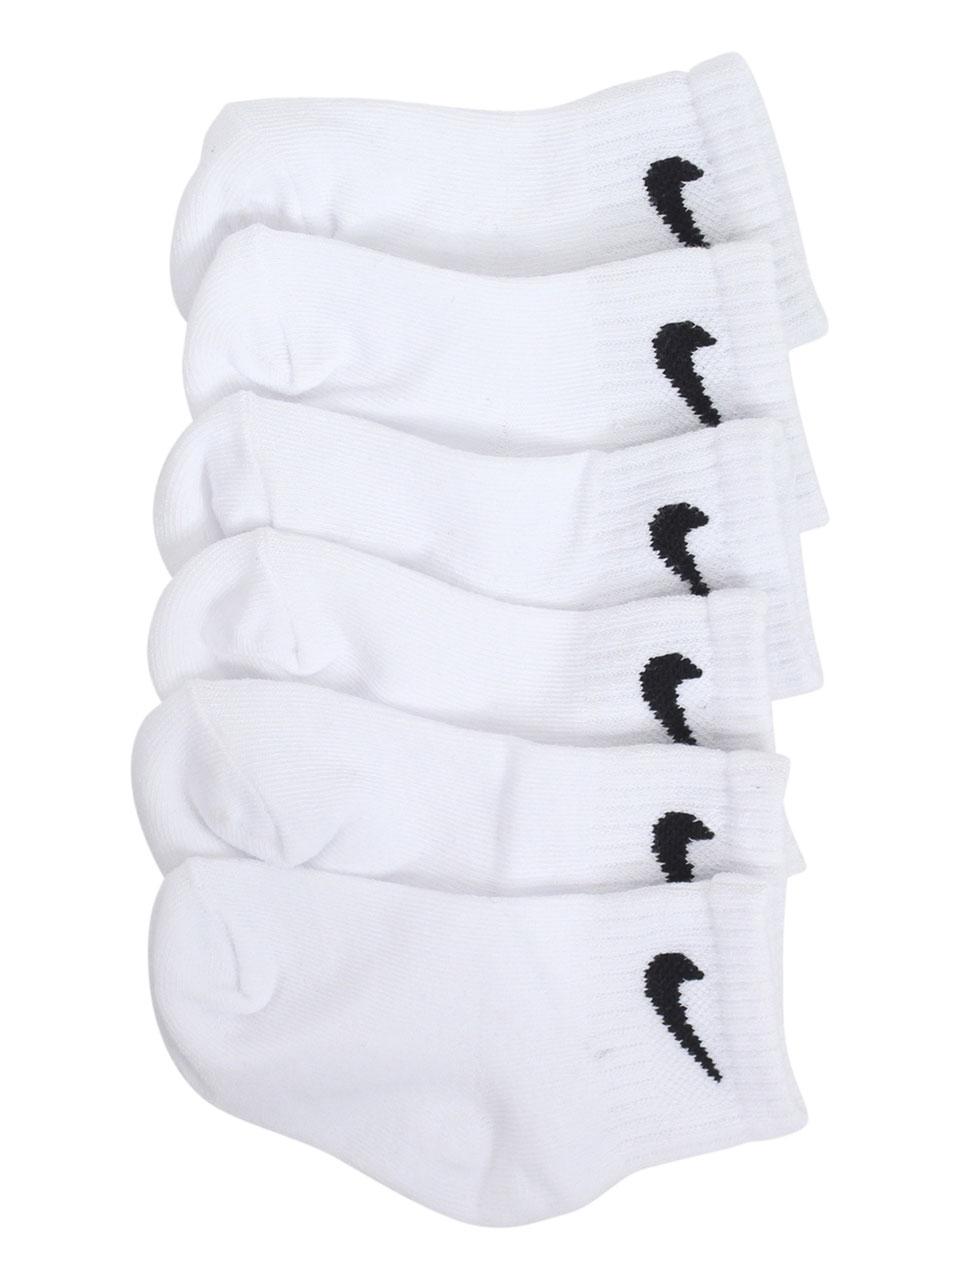 infant nike socks white